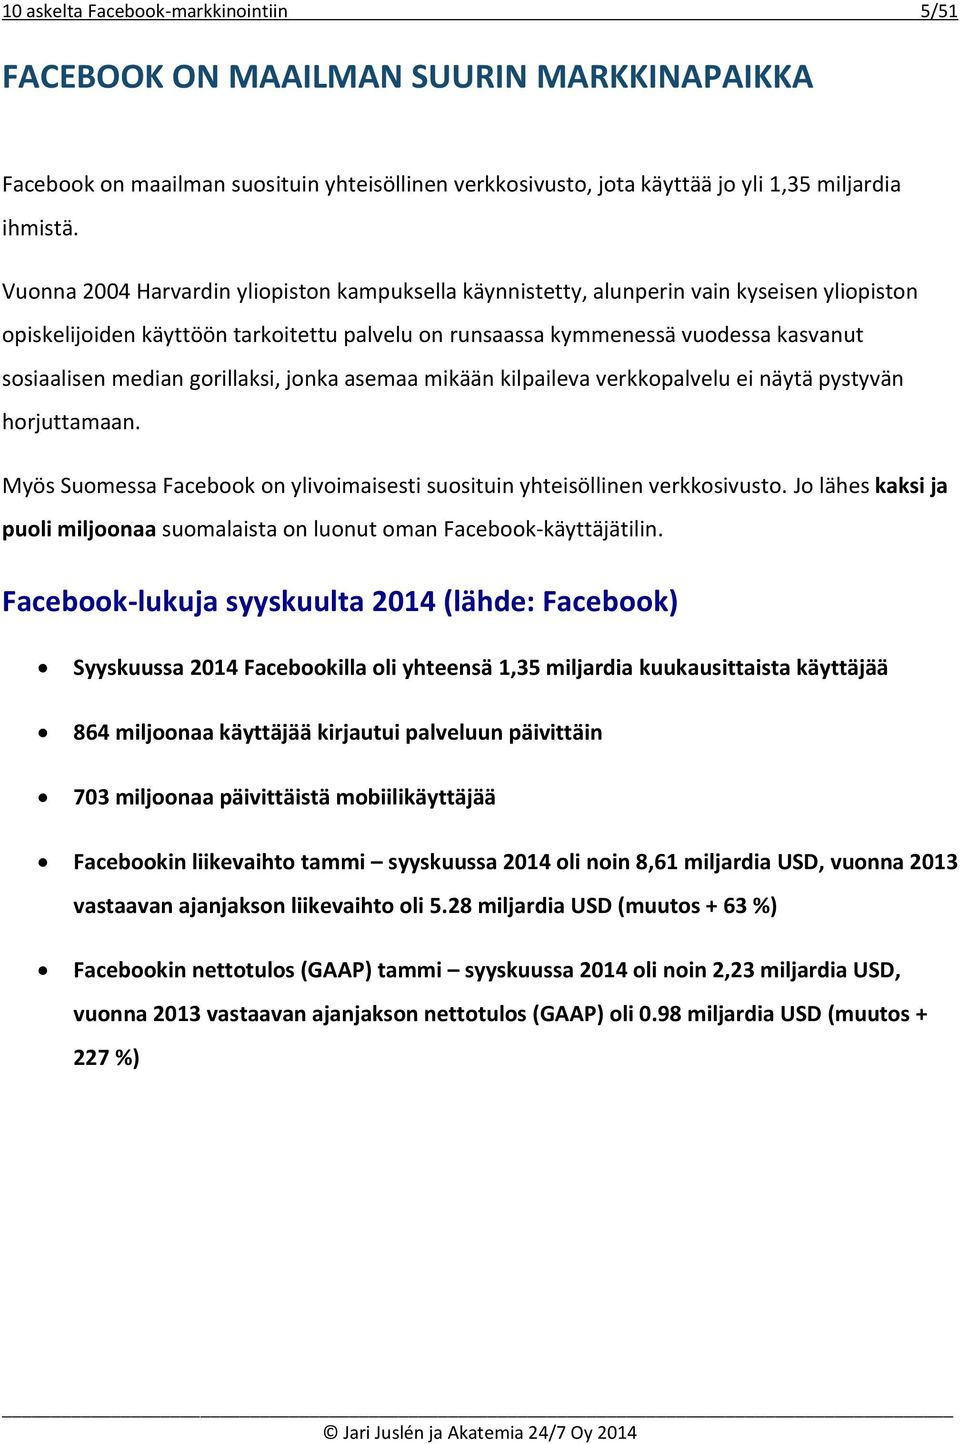 gorillaksi, jonka asemaa mikään kilpaileva verkkopalvelu ei näytä pystyvän horjuttamaan. Myös Suomessa Facebook on ylivoimaisesti suosituin yhteisöllinen verkkosivusto.